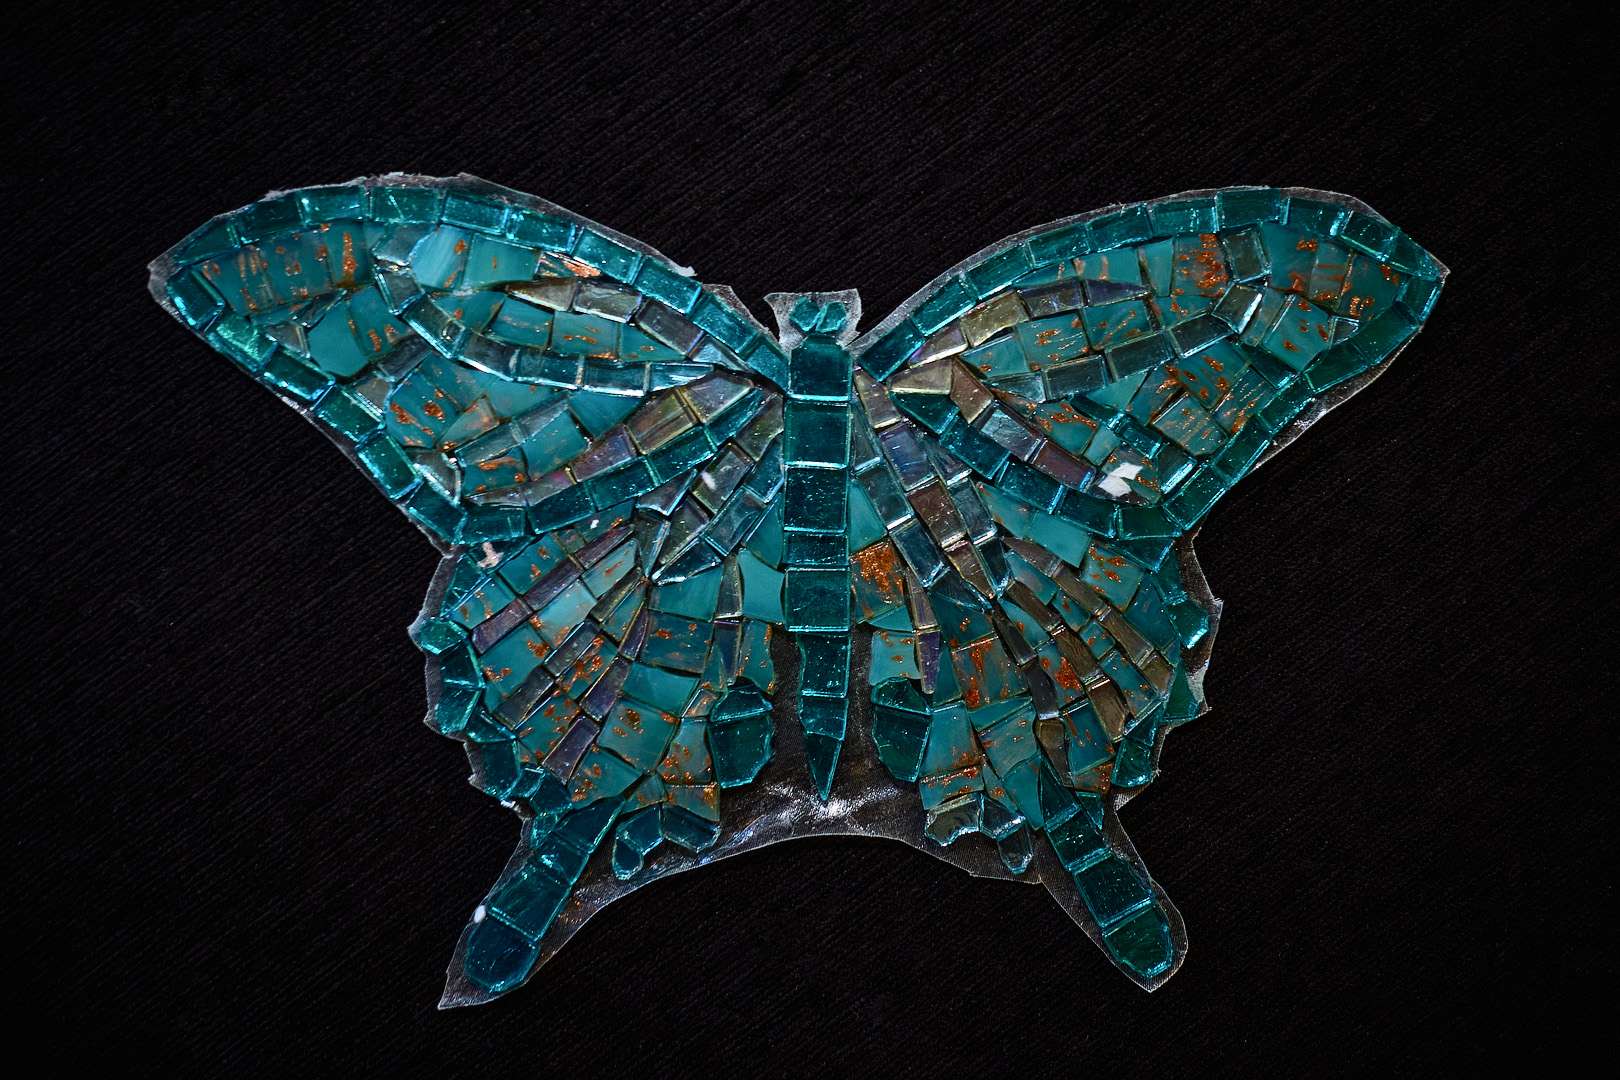 Мозаика Sicis (Сичис) Butterfly (Батерфляй) Mariposa 18 - Option A